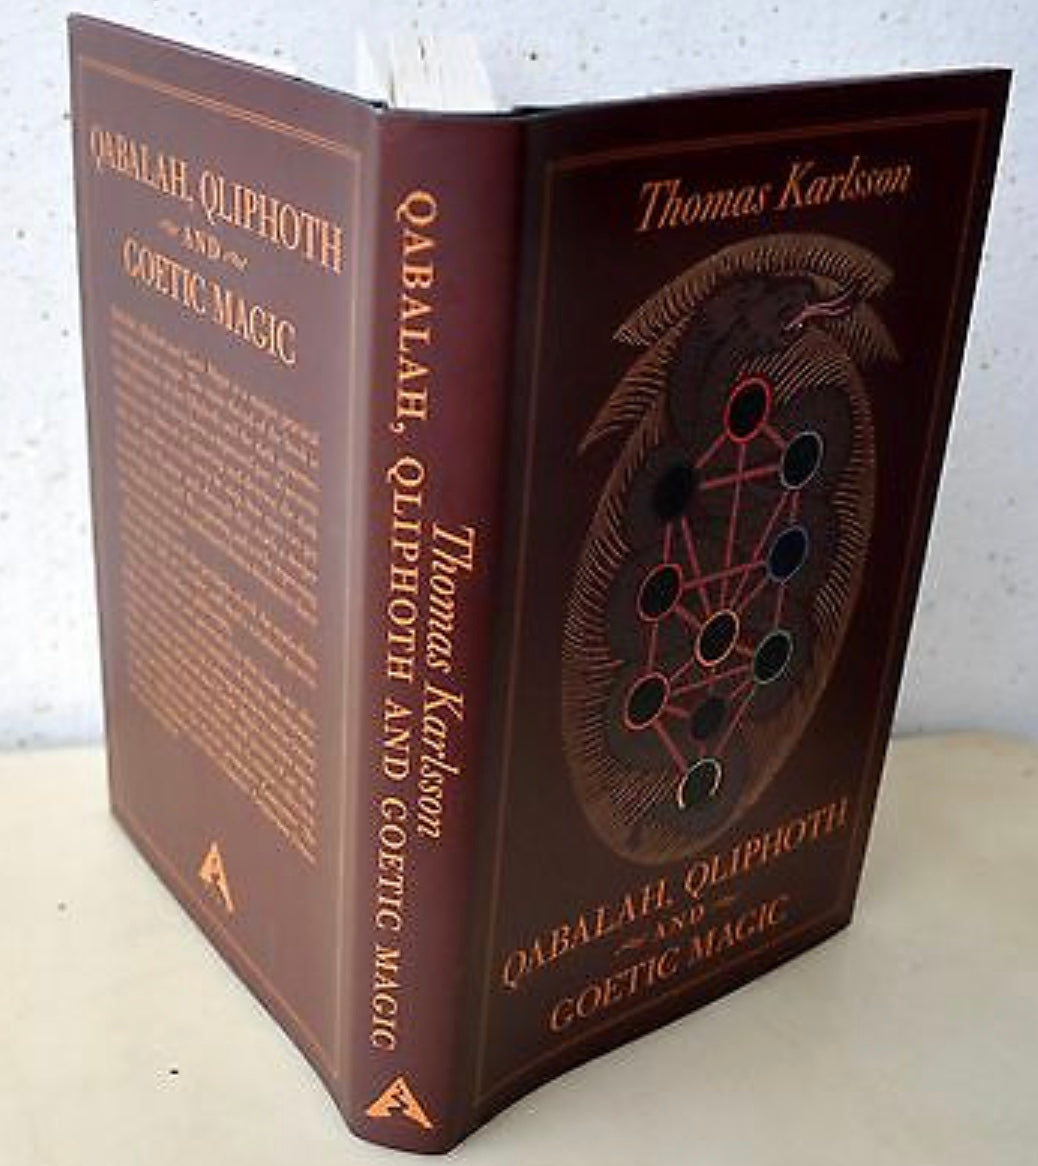 Qabalah, Qliphoth and Goetic Magic by Thomas Karlsson - Spirits Magick